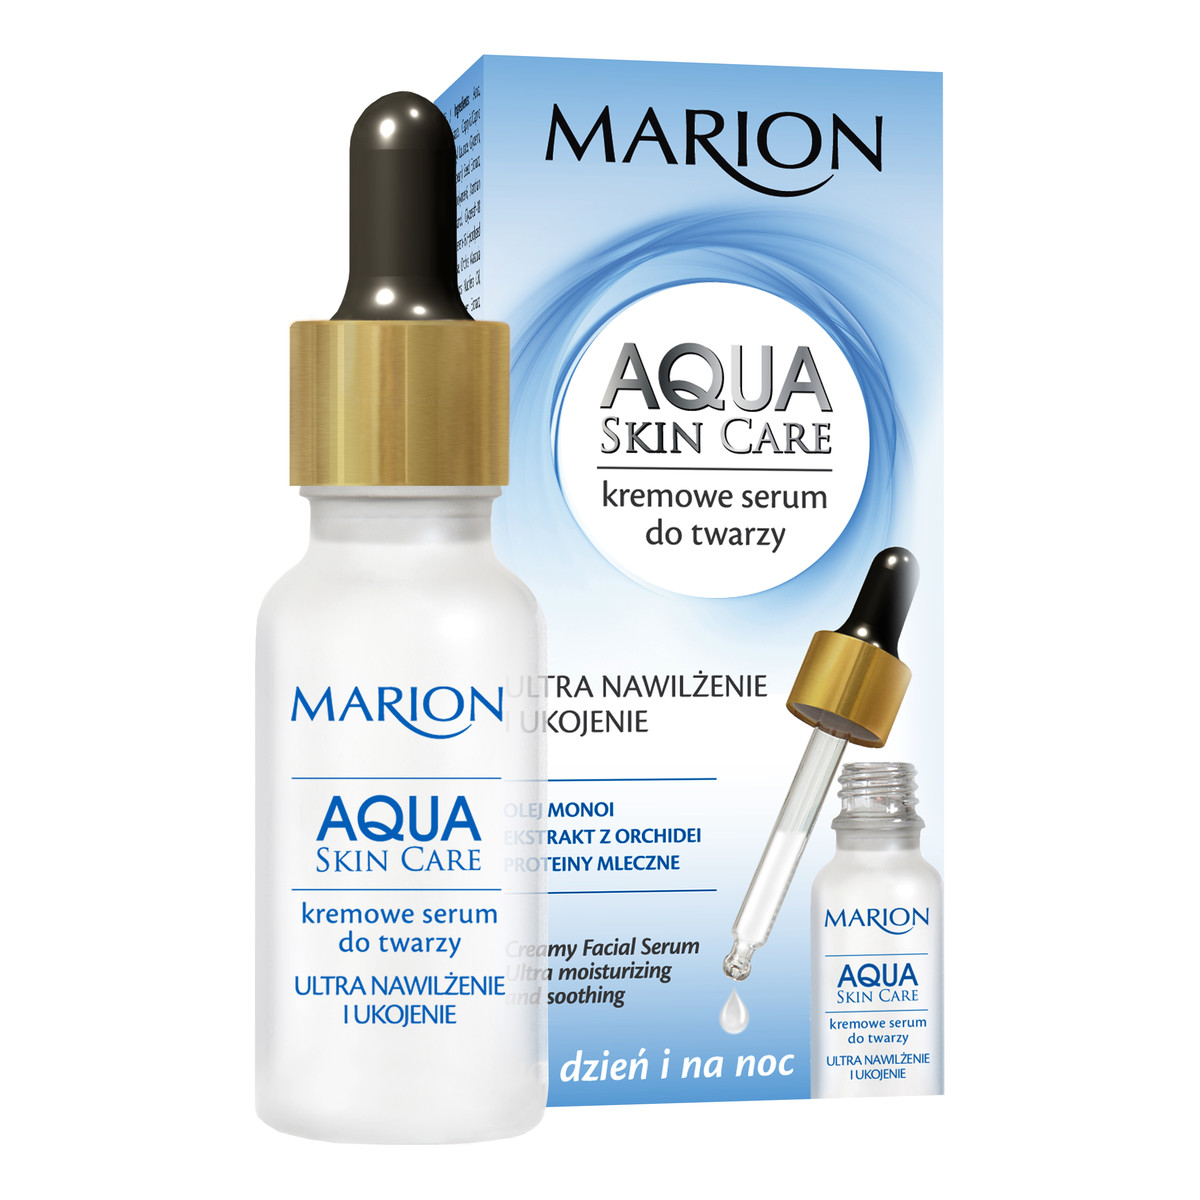 Marion Aqua Skin Care Kremowe Serum Do Twarzy, Szyi i Dekoltu 20ml